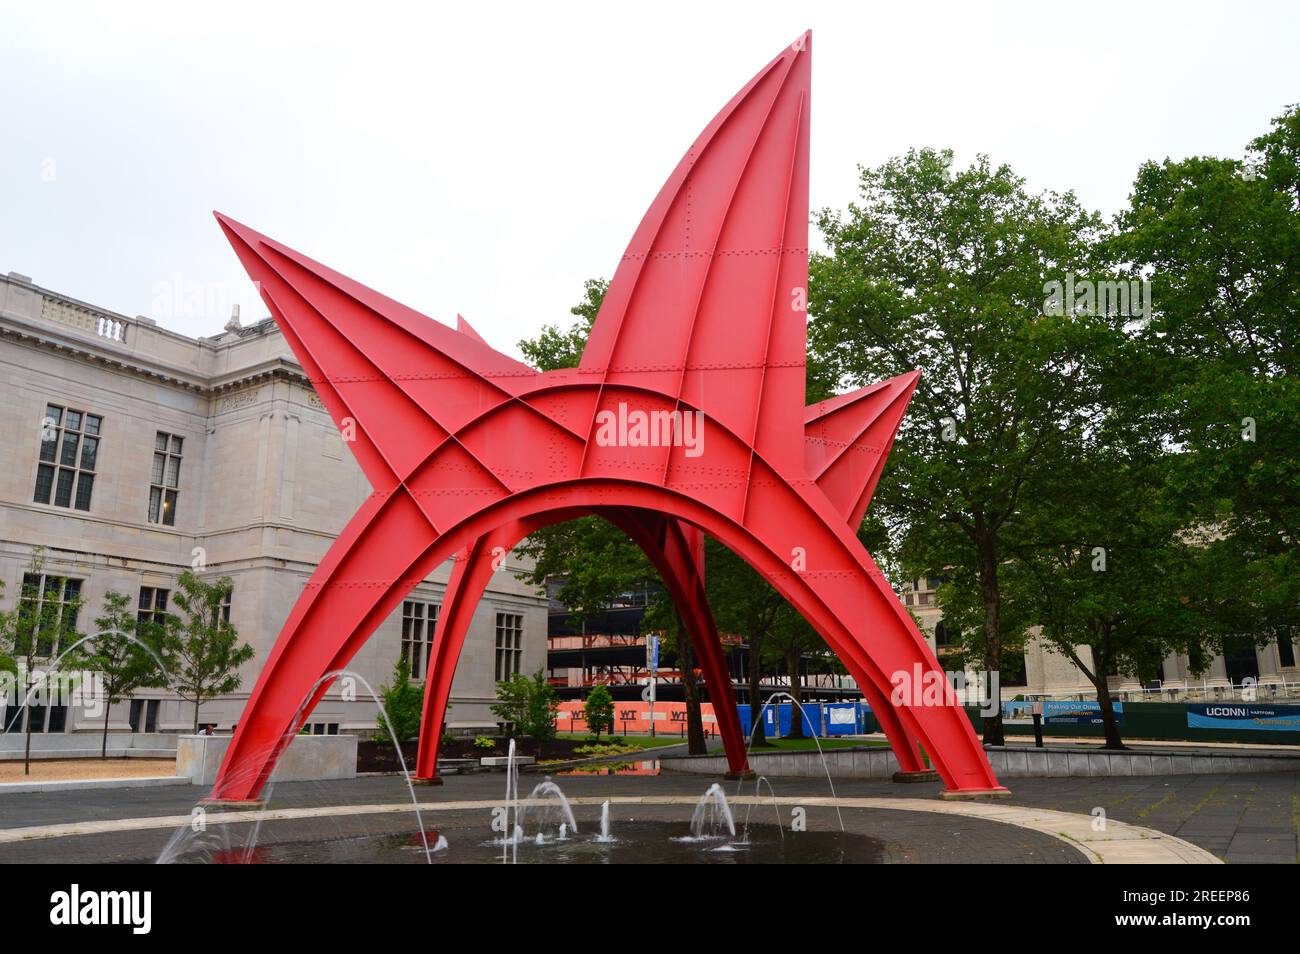 La sculpture Stegosaurus d’Alexander Calder se dresse sur une place publique à Hartford, Connecticut Banque D'Images